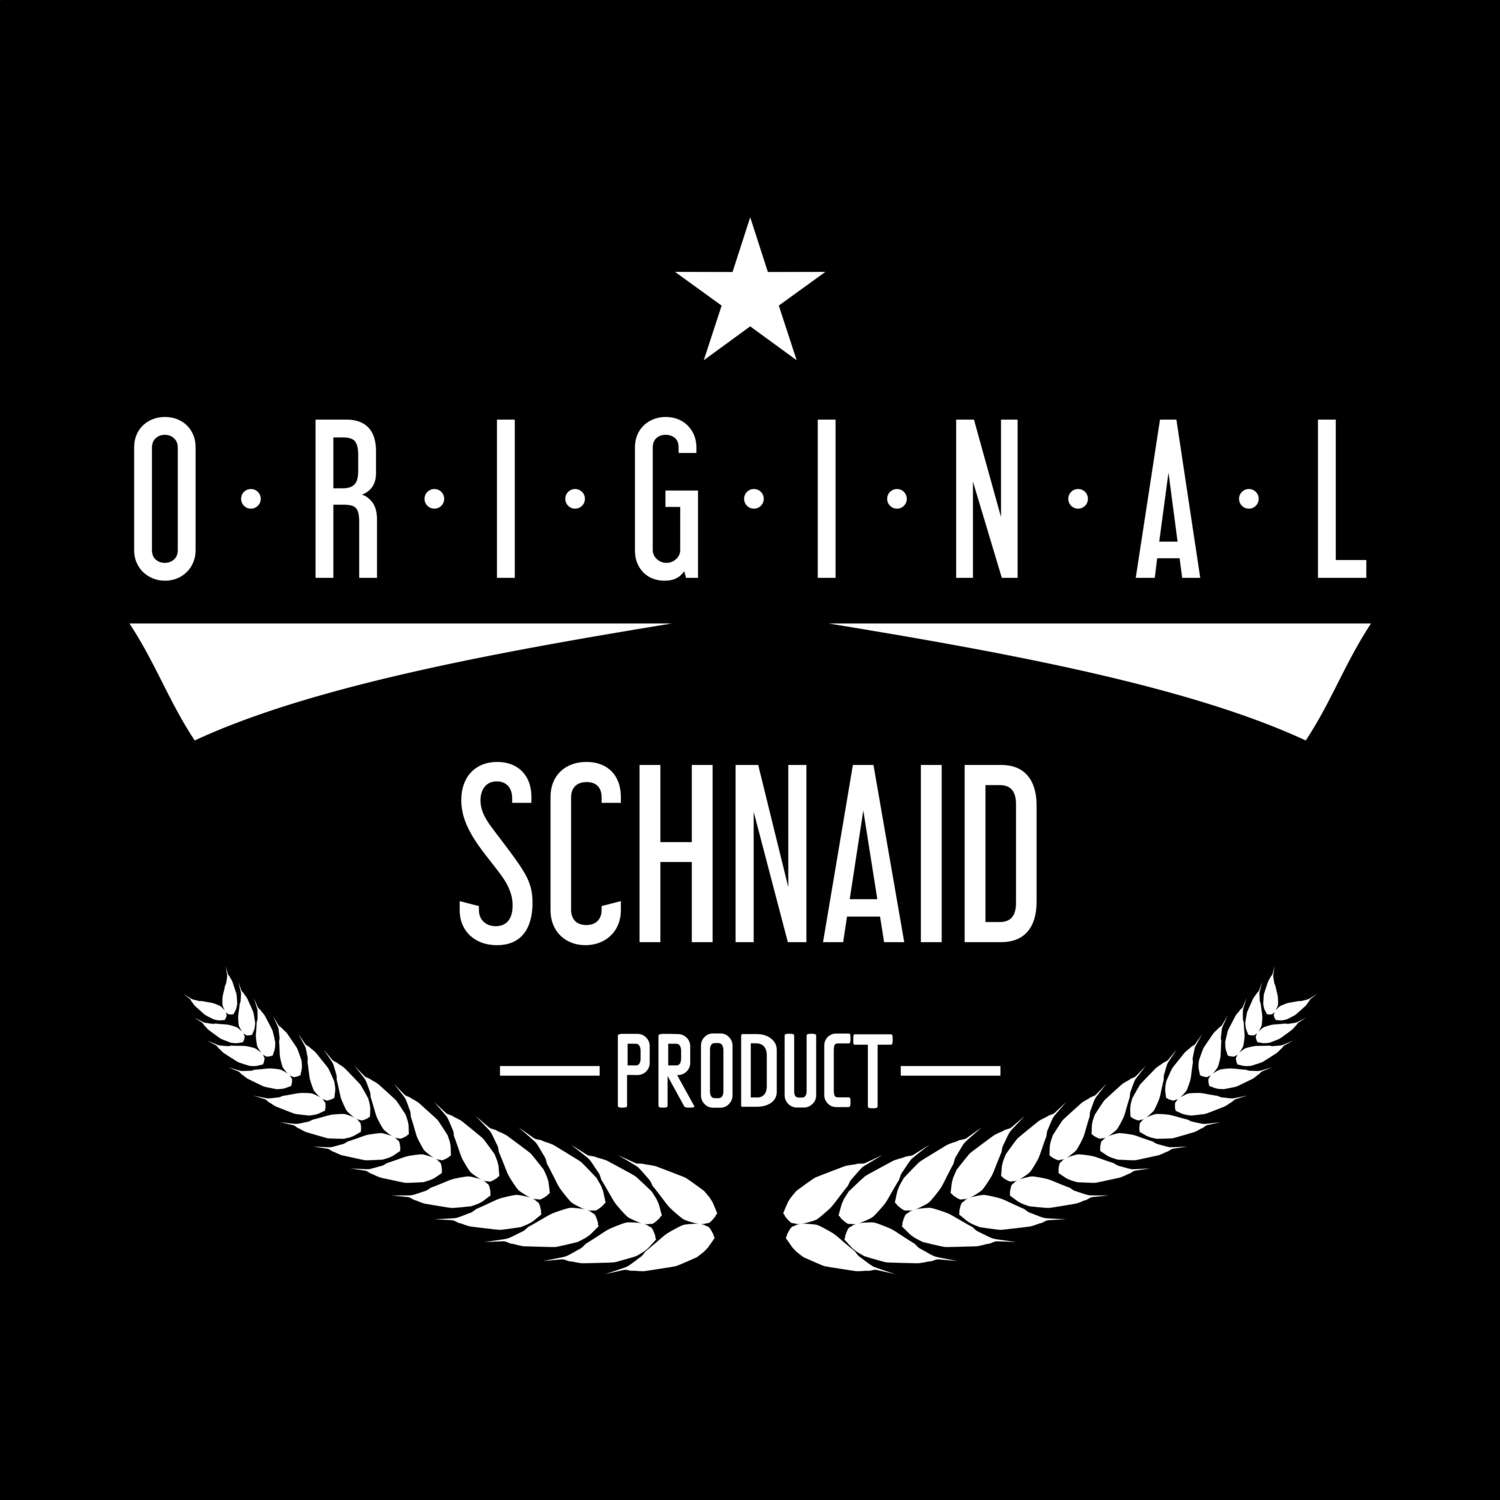 Schnaid T-Shirt »Original Product«